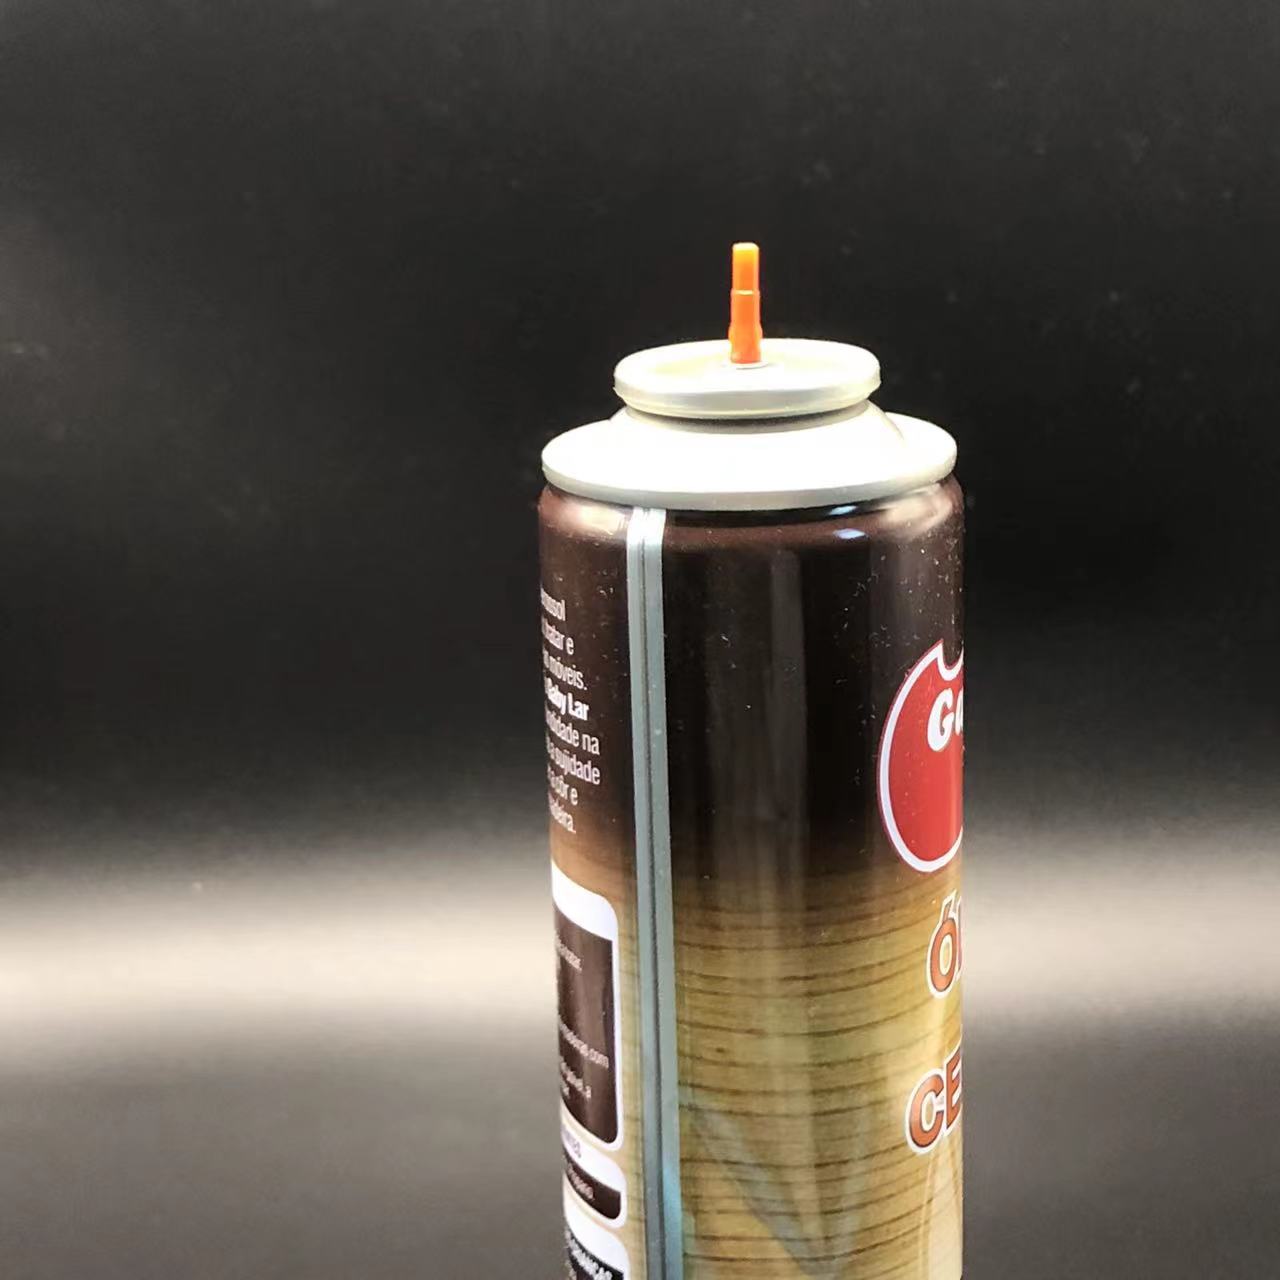 Adaptadores coloridos para a válvula de reabastecimento de clareia a gás de butano personalizam sua experiência de reabastecimento